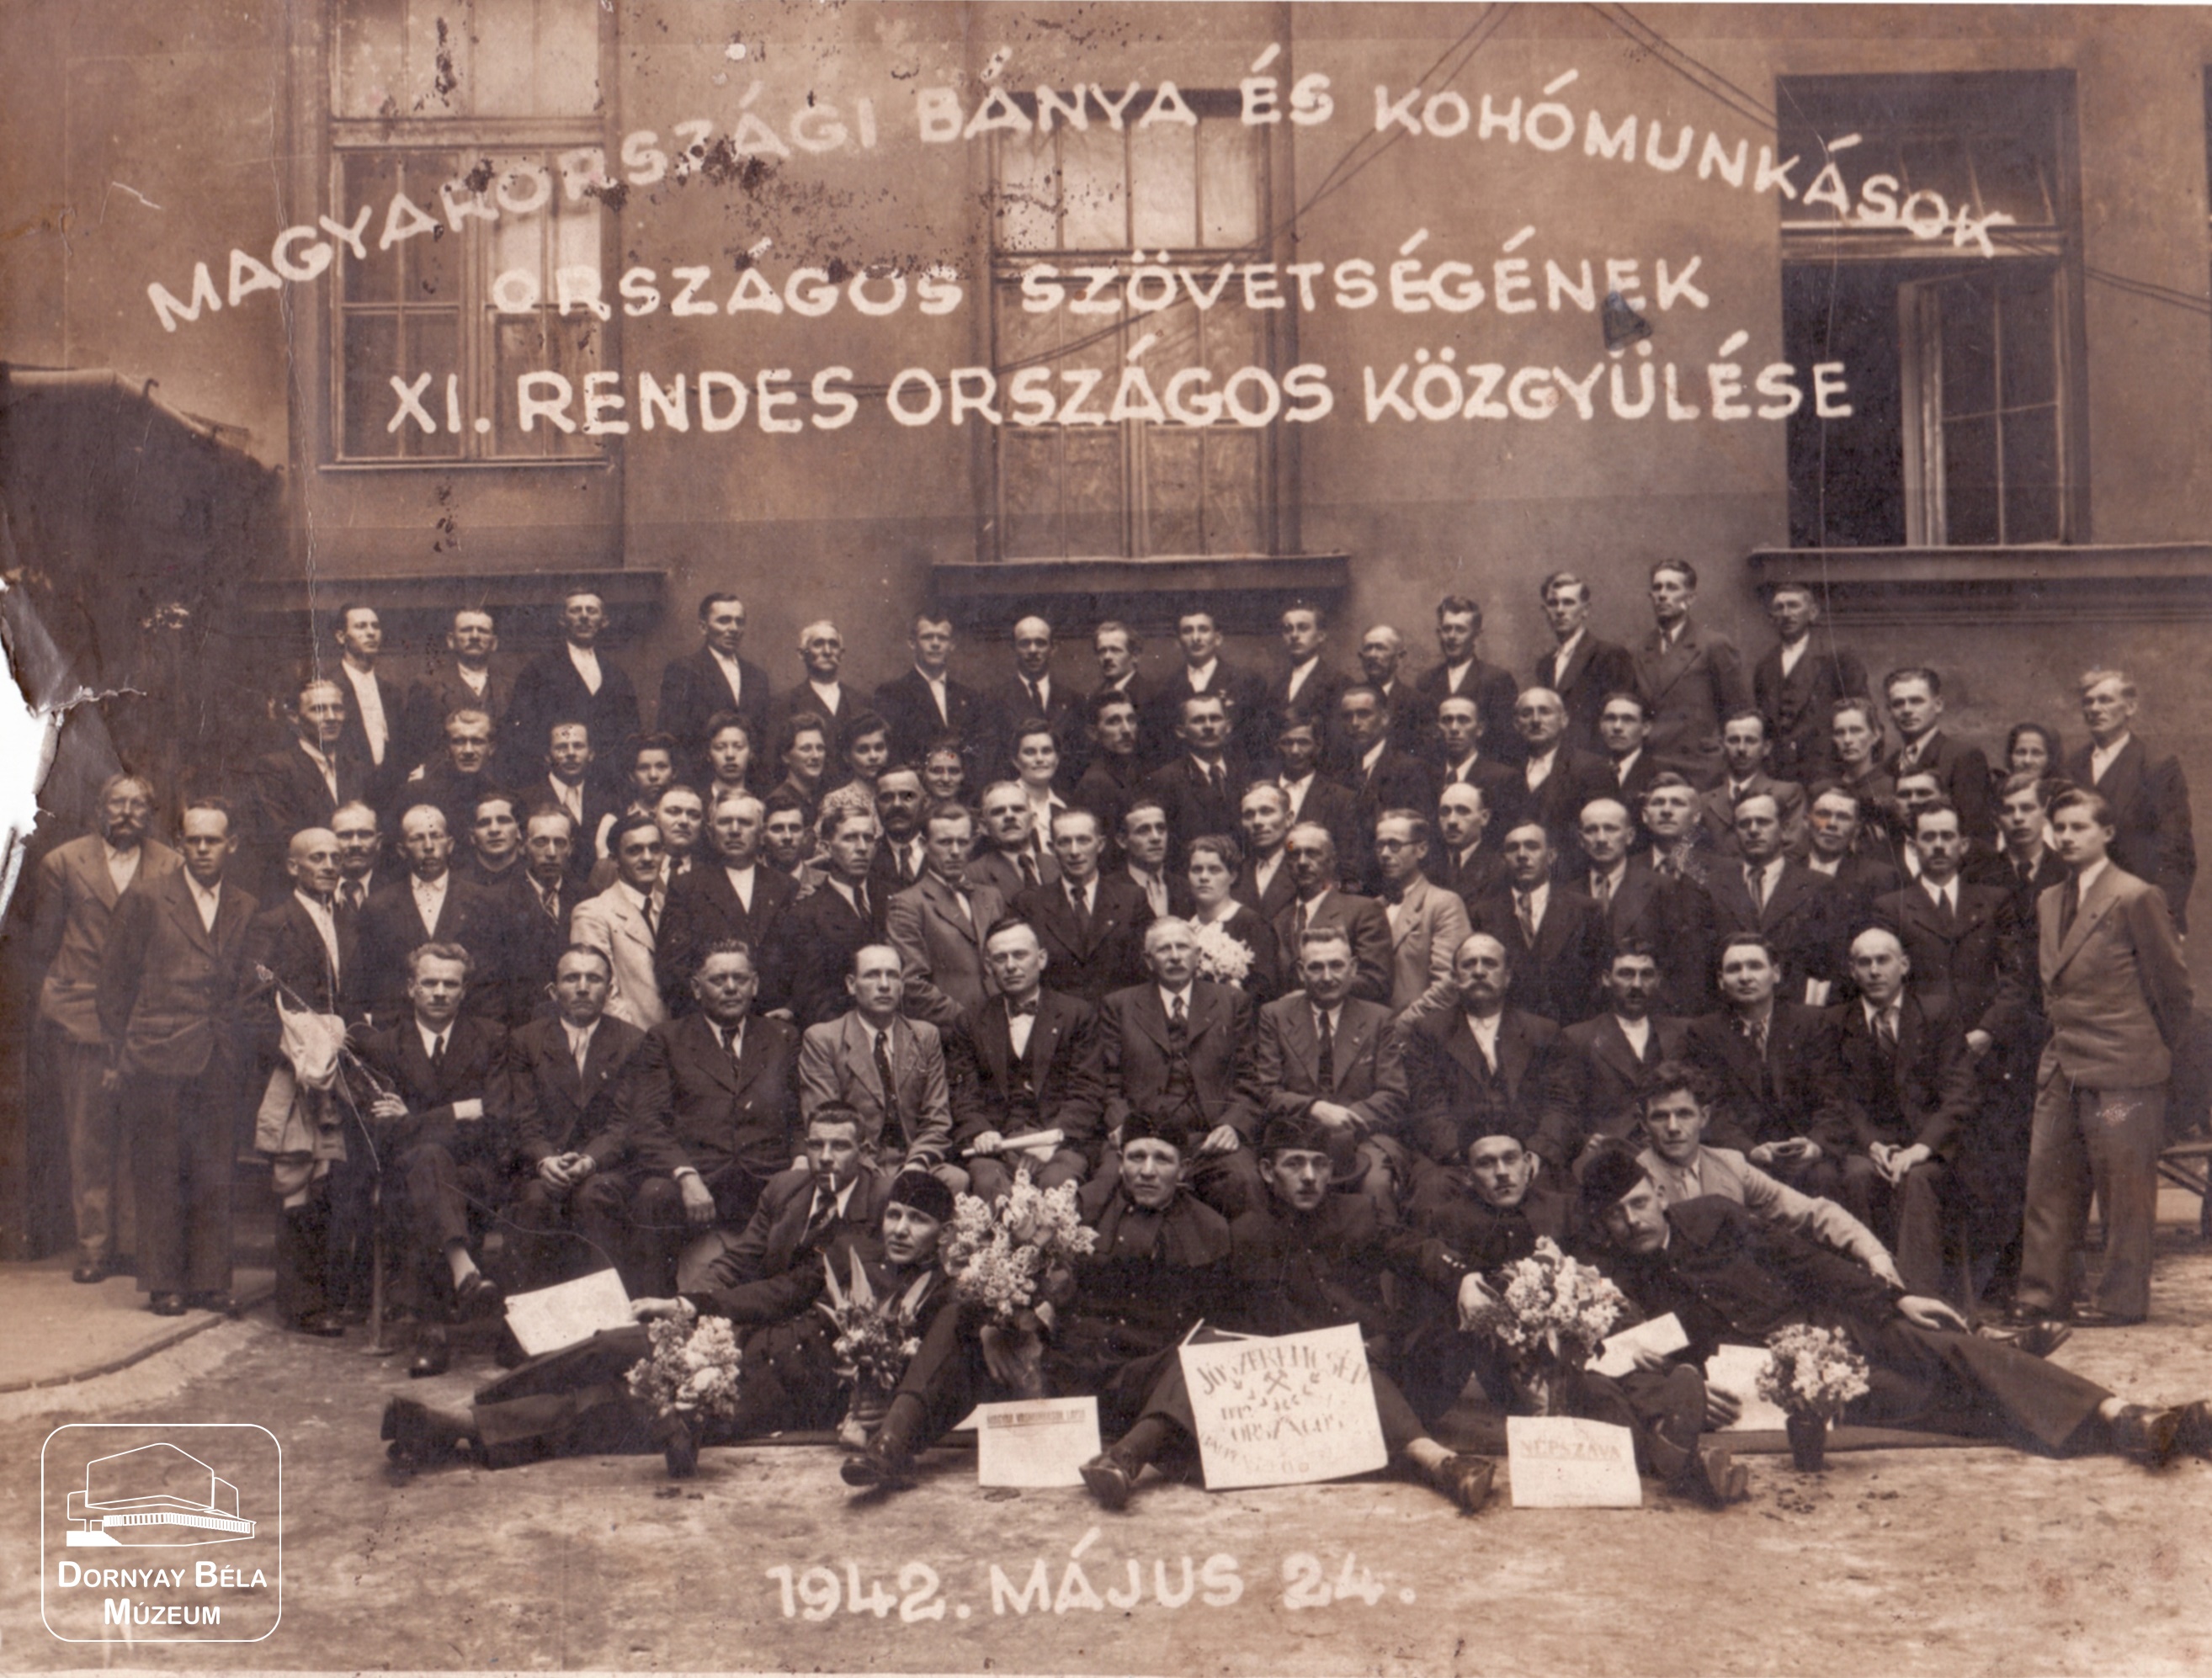 A Magyarországi Bánya- és Kohómunkások Országos Szövetségének XI. rendes országos közgyűlése. 1942. május 24. (Dornyay Béla Múzeum, Salgótarján CC BY-NC-SA)